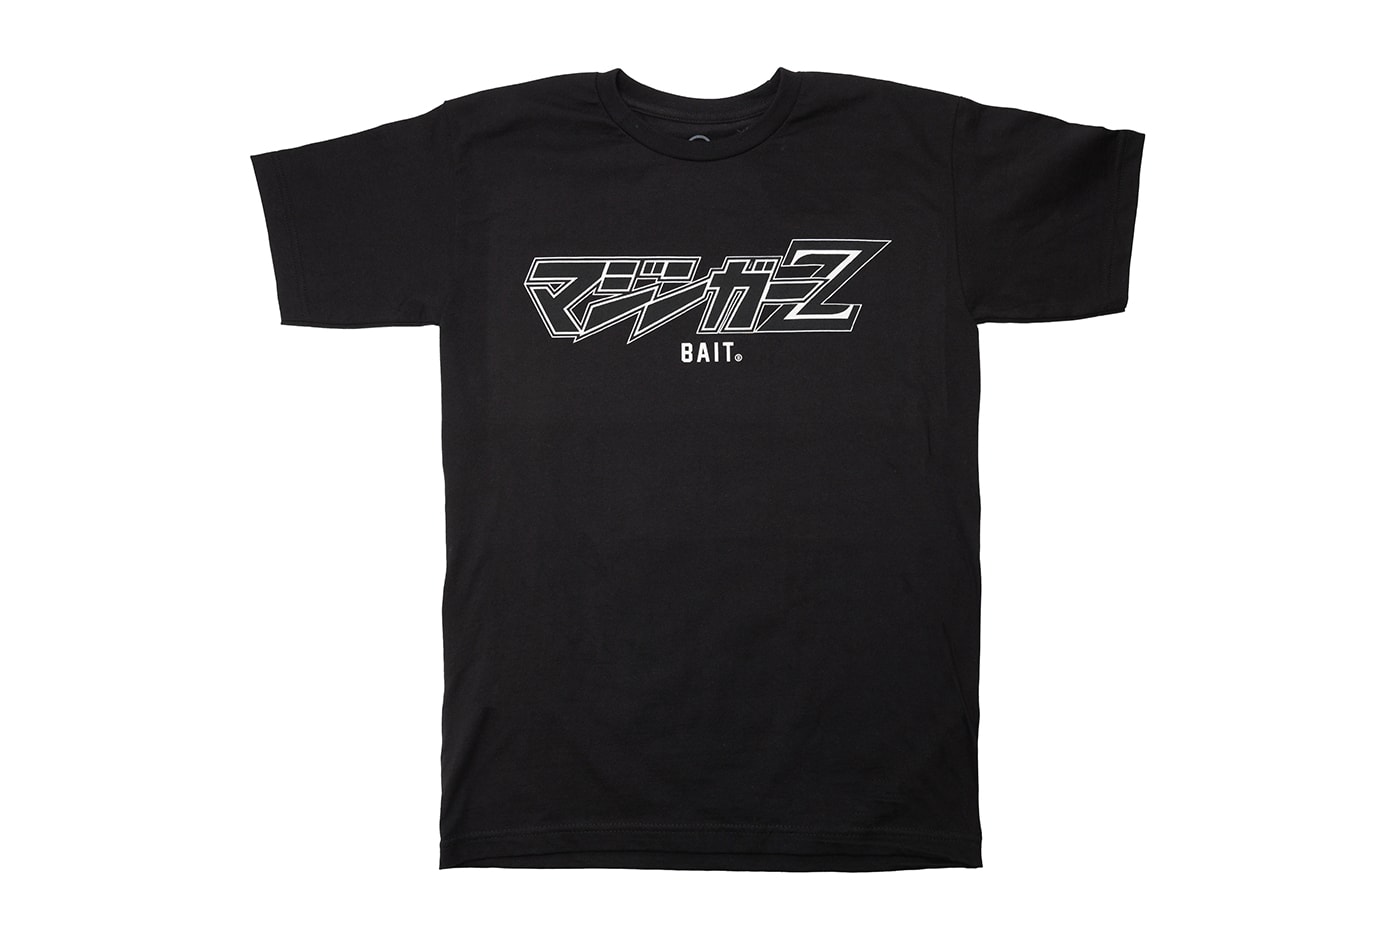 BAIT Good Smile Company V.S.O.F. Mazinger Z Metallic Figure Release Info Date Buy Price 